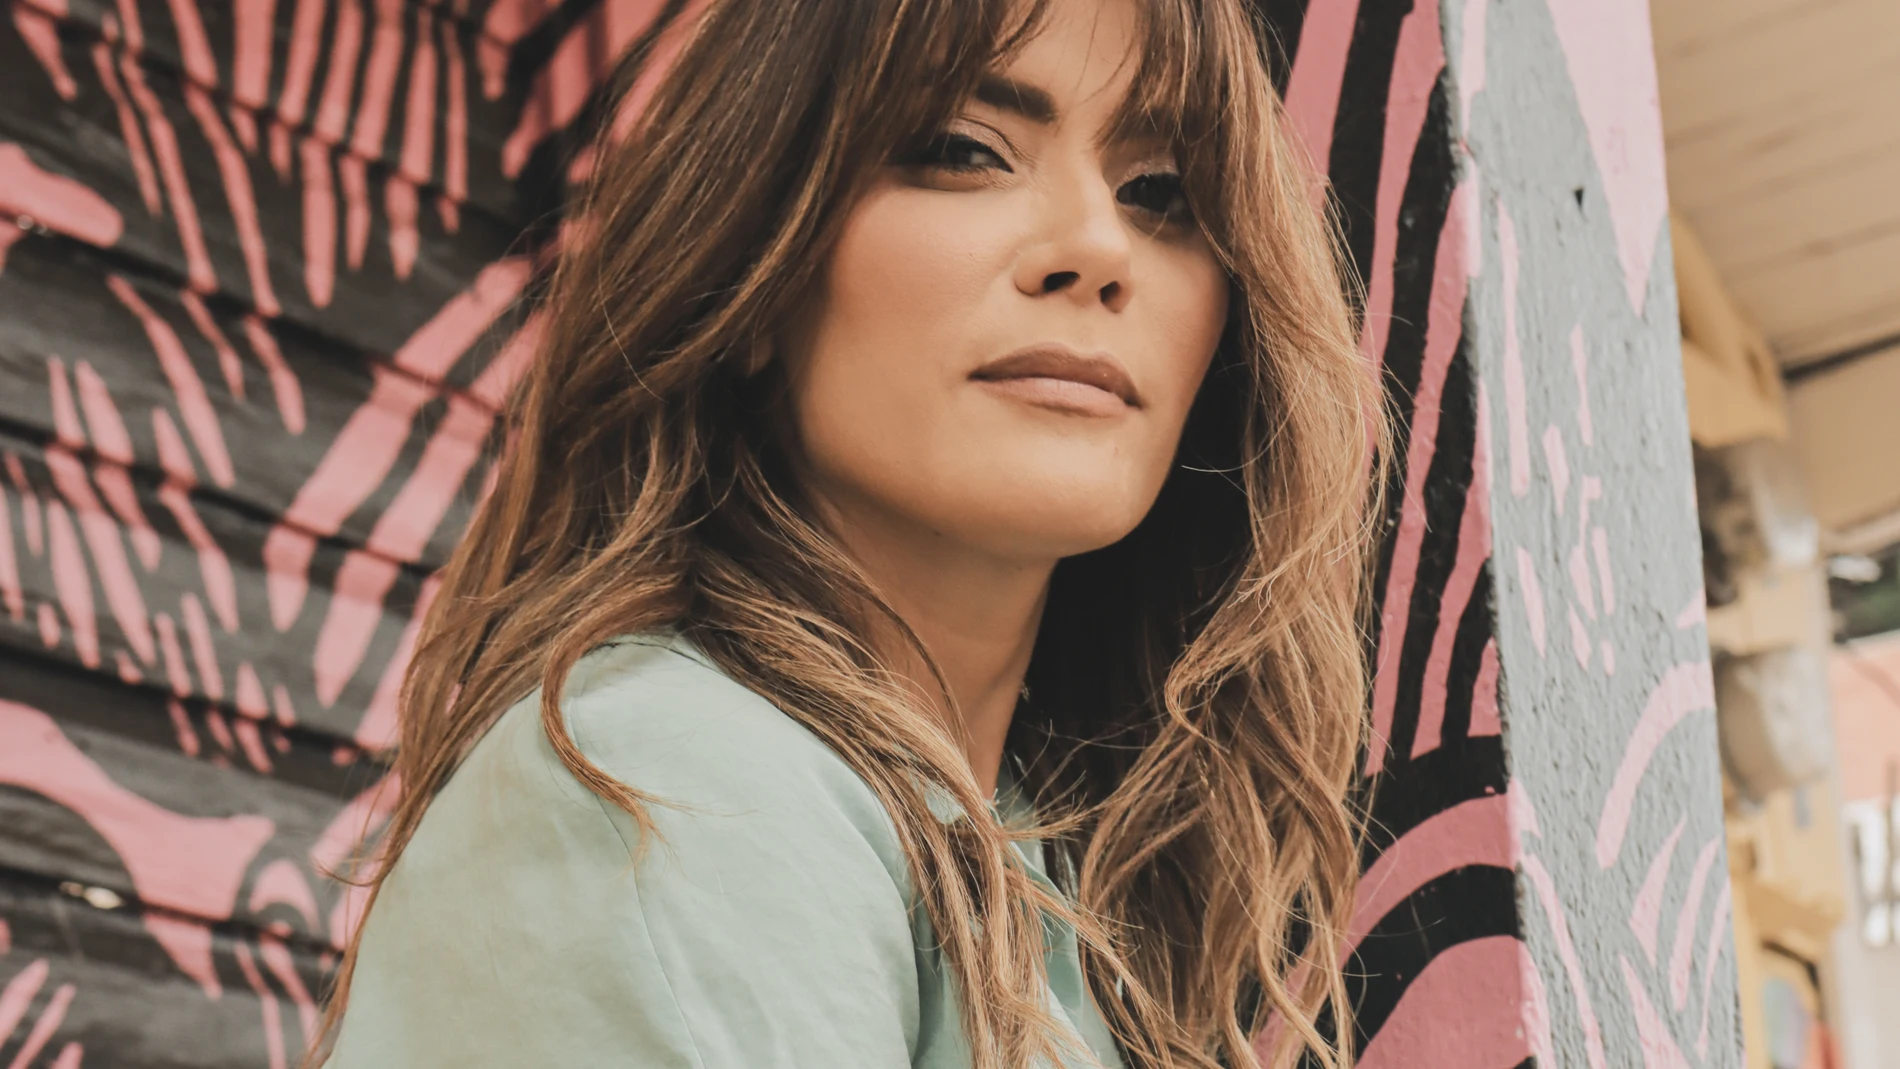 La cantante, Kany García, es una de las artistas más influyentes del pop latino